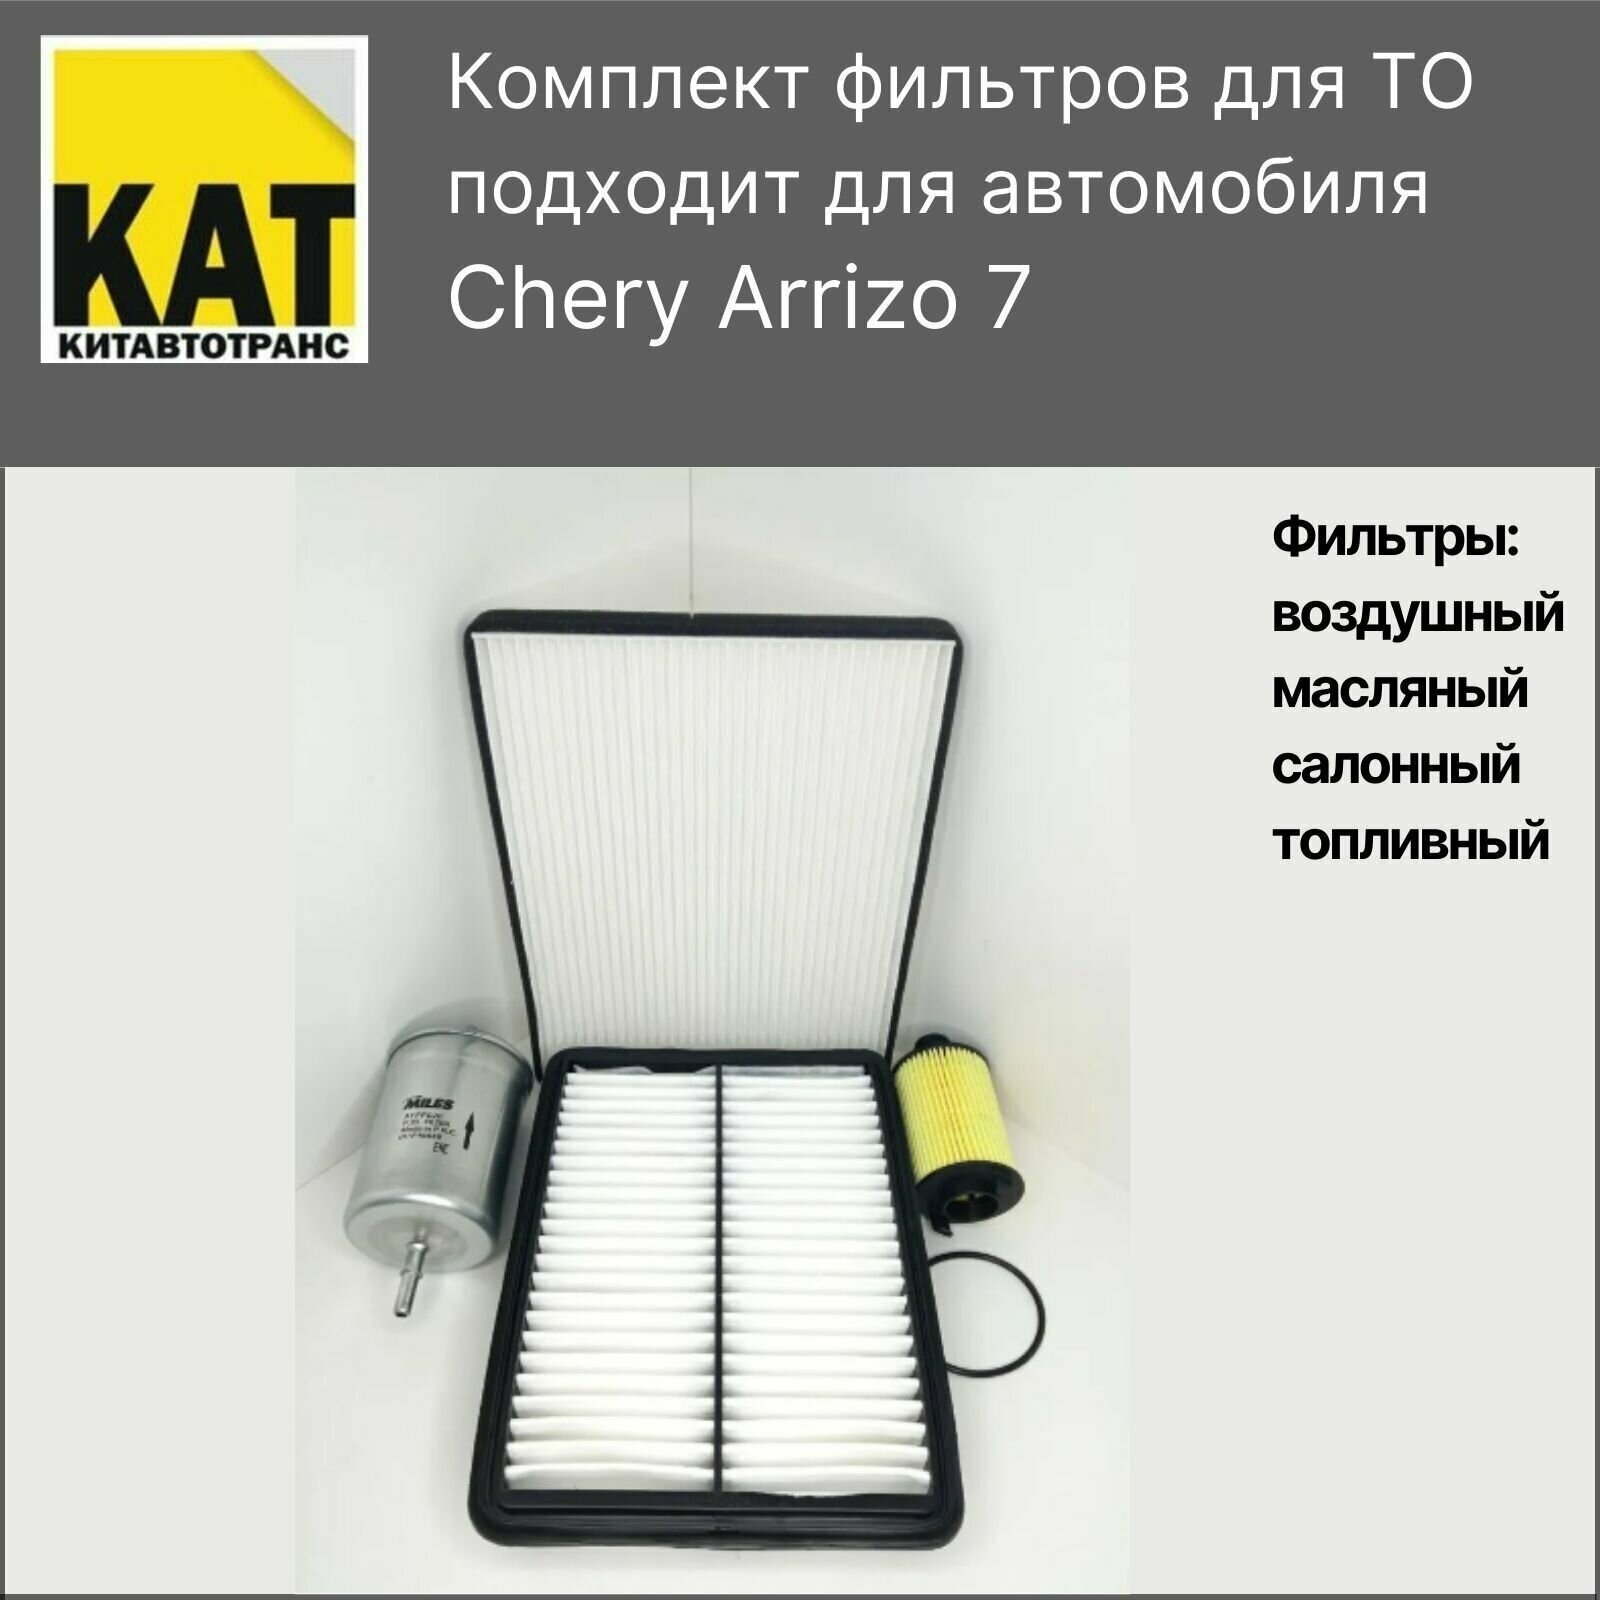 Фильтр воздушный + салонный + масляный + топливный комплект для Чери Арризо 7 (Chery Arrizo 7)